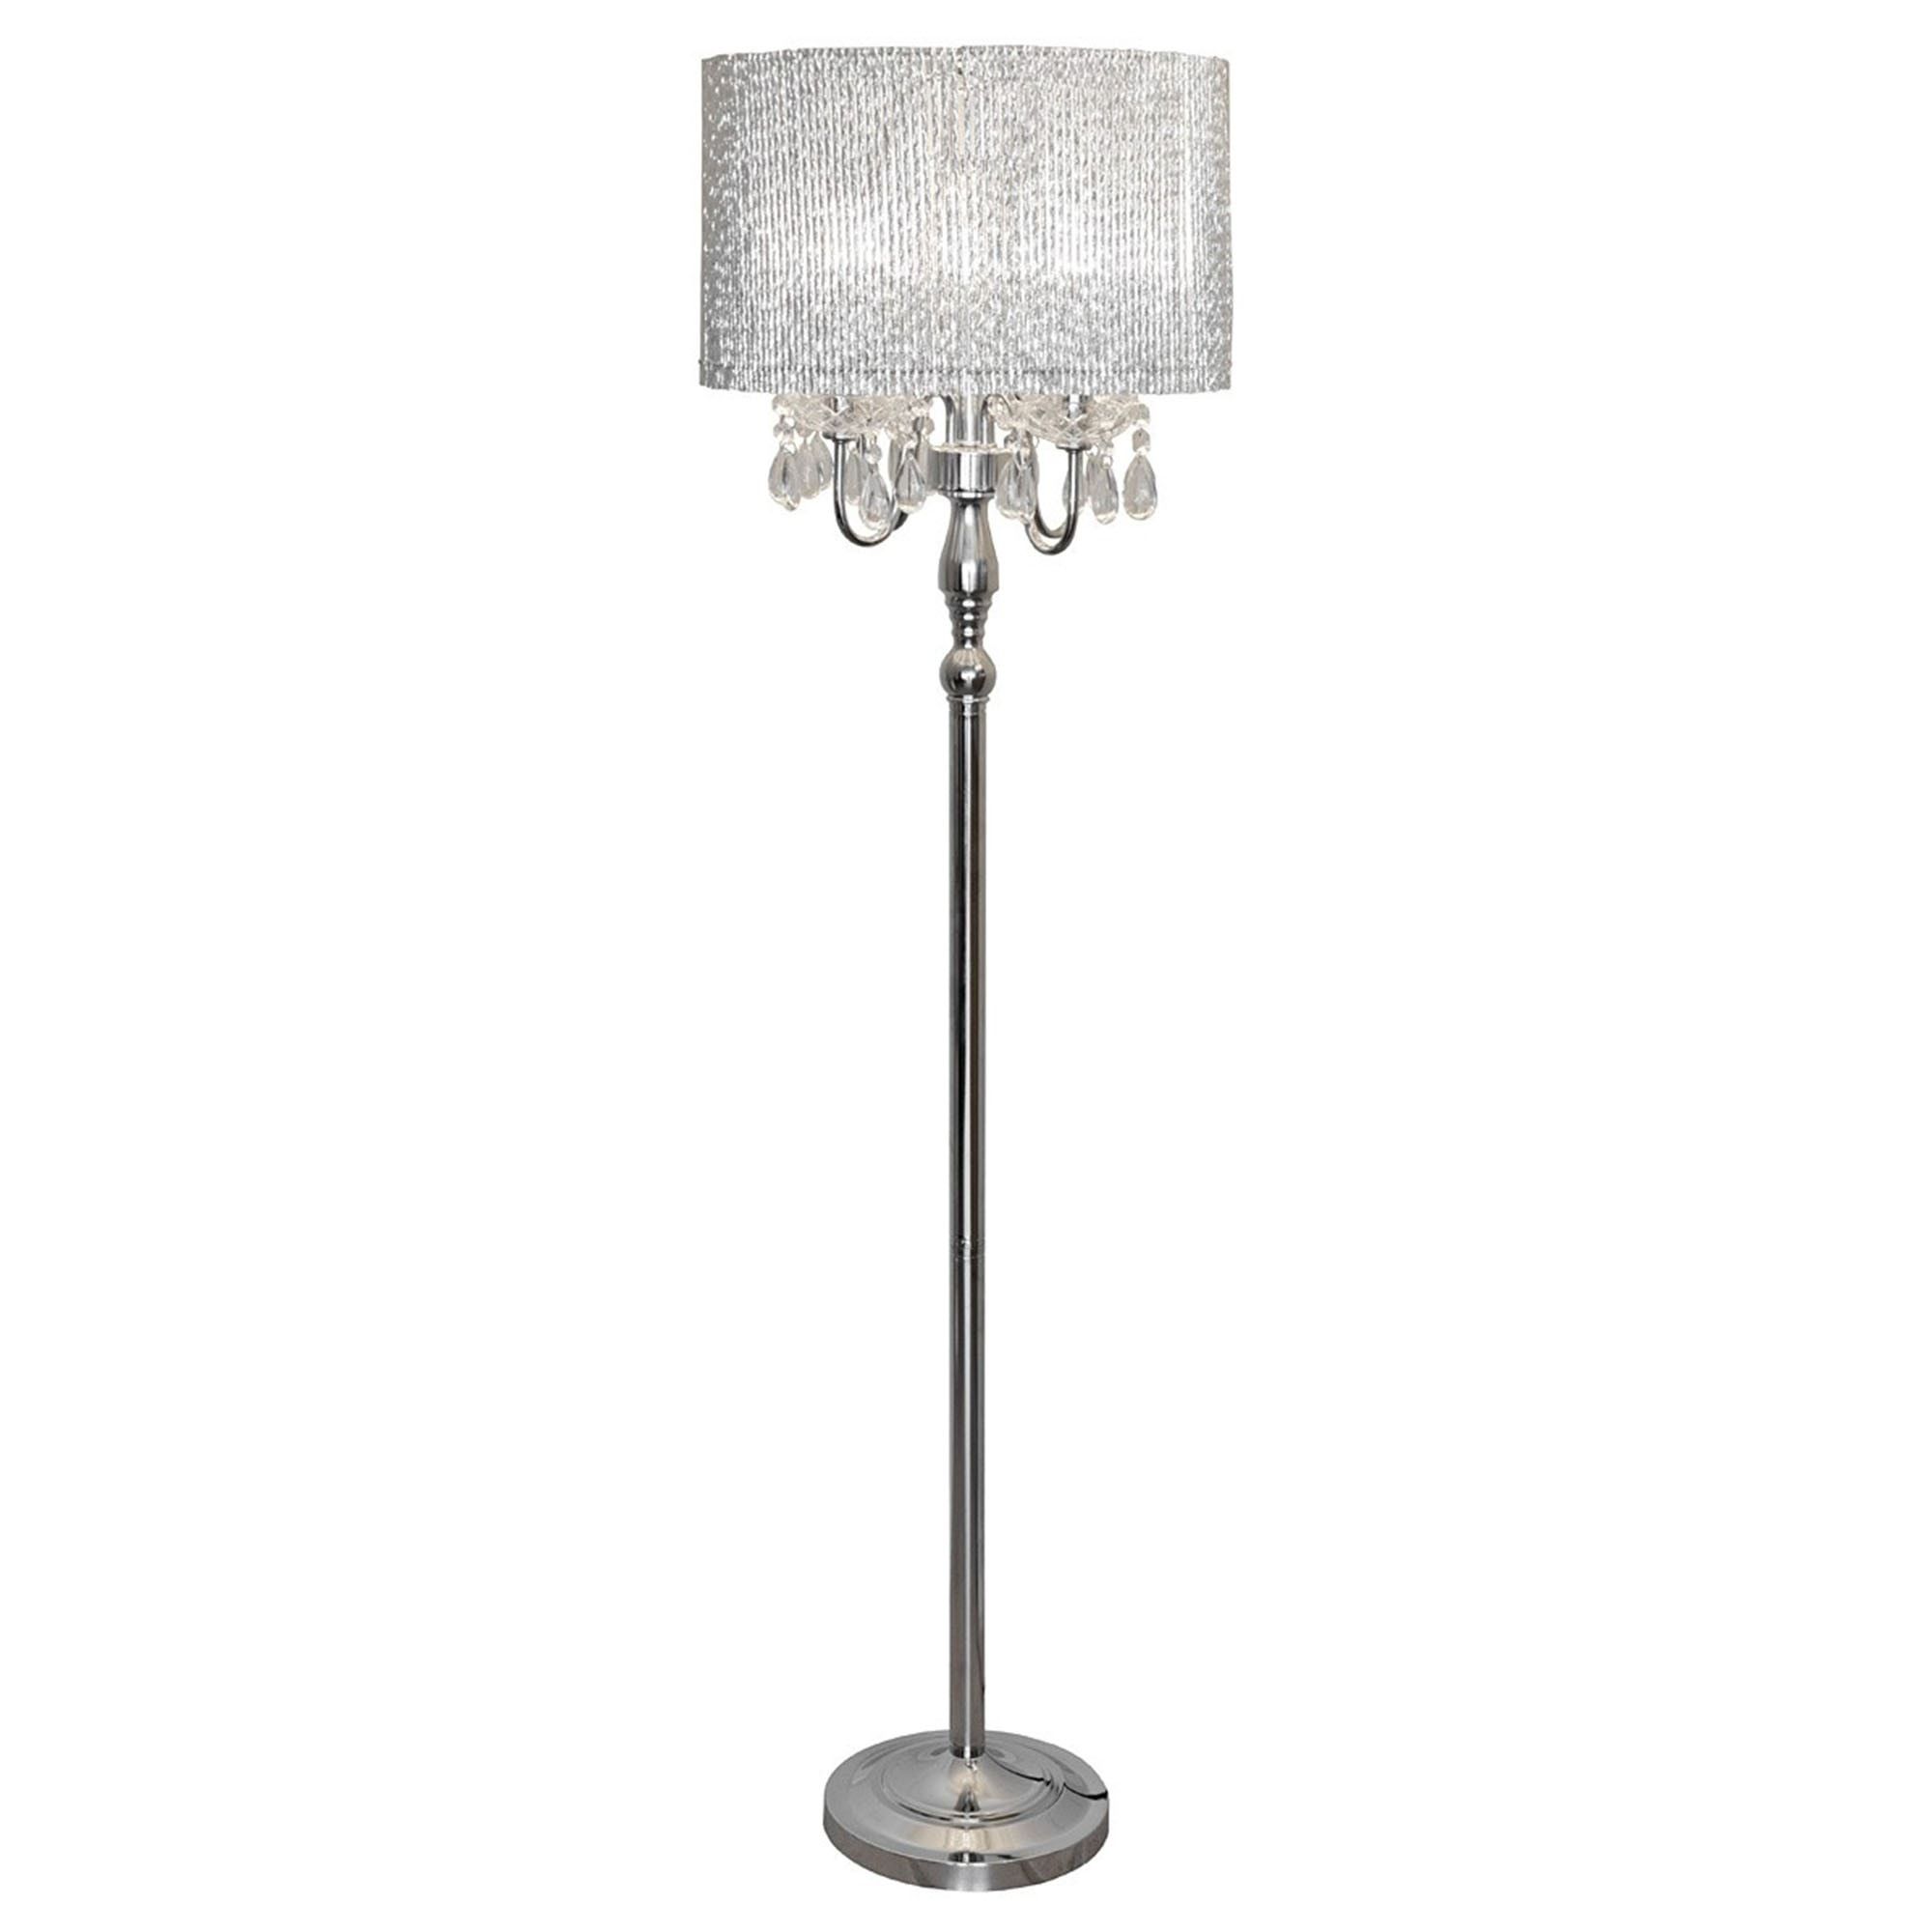 Beaumont Floor Lamp | Contemporary Lighting | Floorstanding Lamps With Regard To Silver Floor Lamps (View 2 of 15)